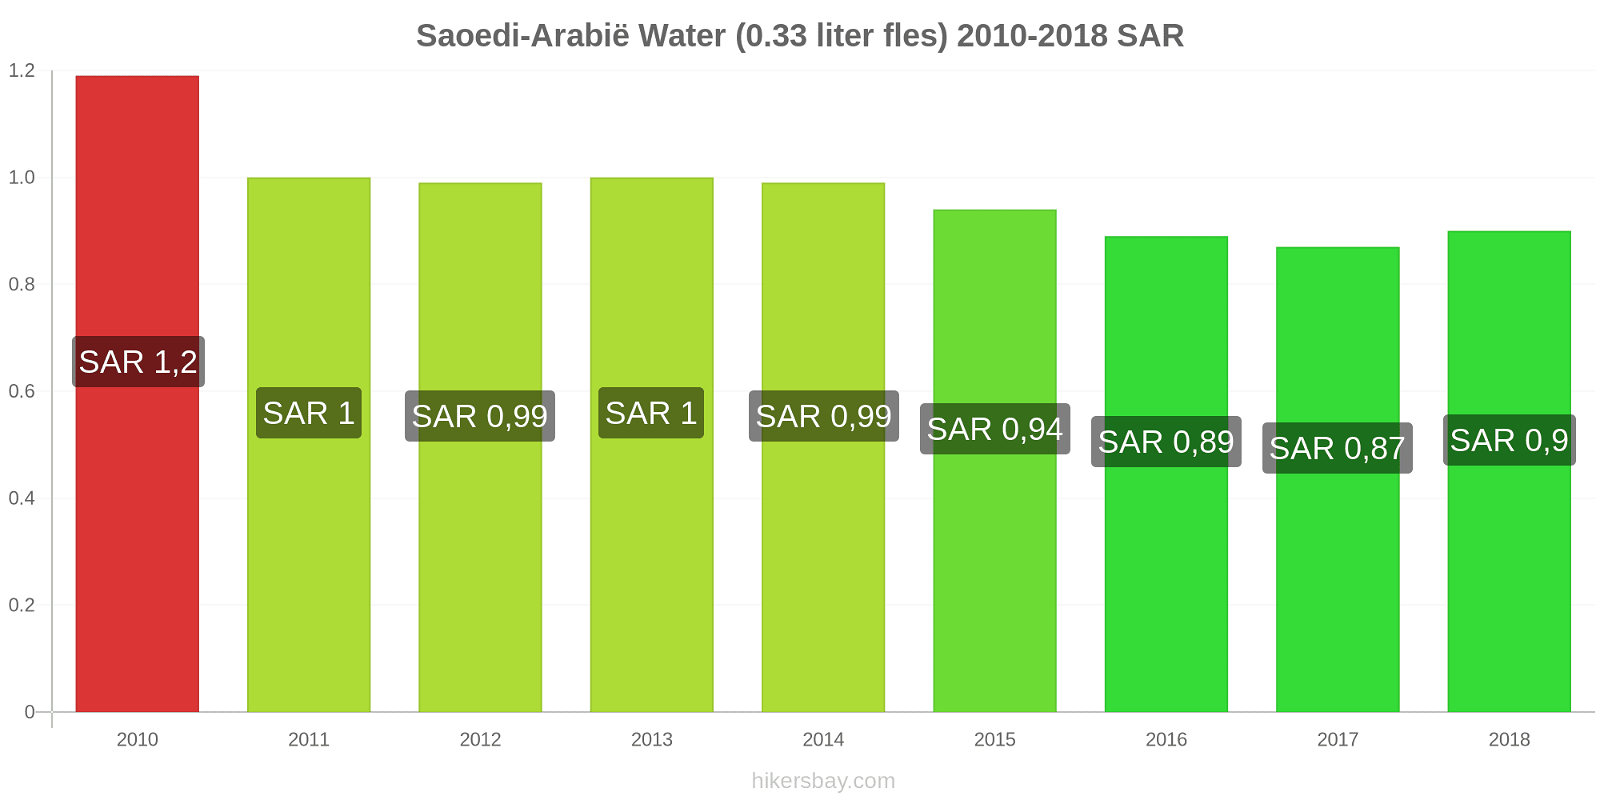 Saoedi-Arabië prijswijzigingen Water (0.33 liter fles) hikersbay.com